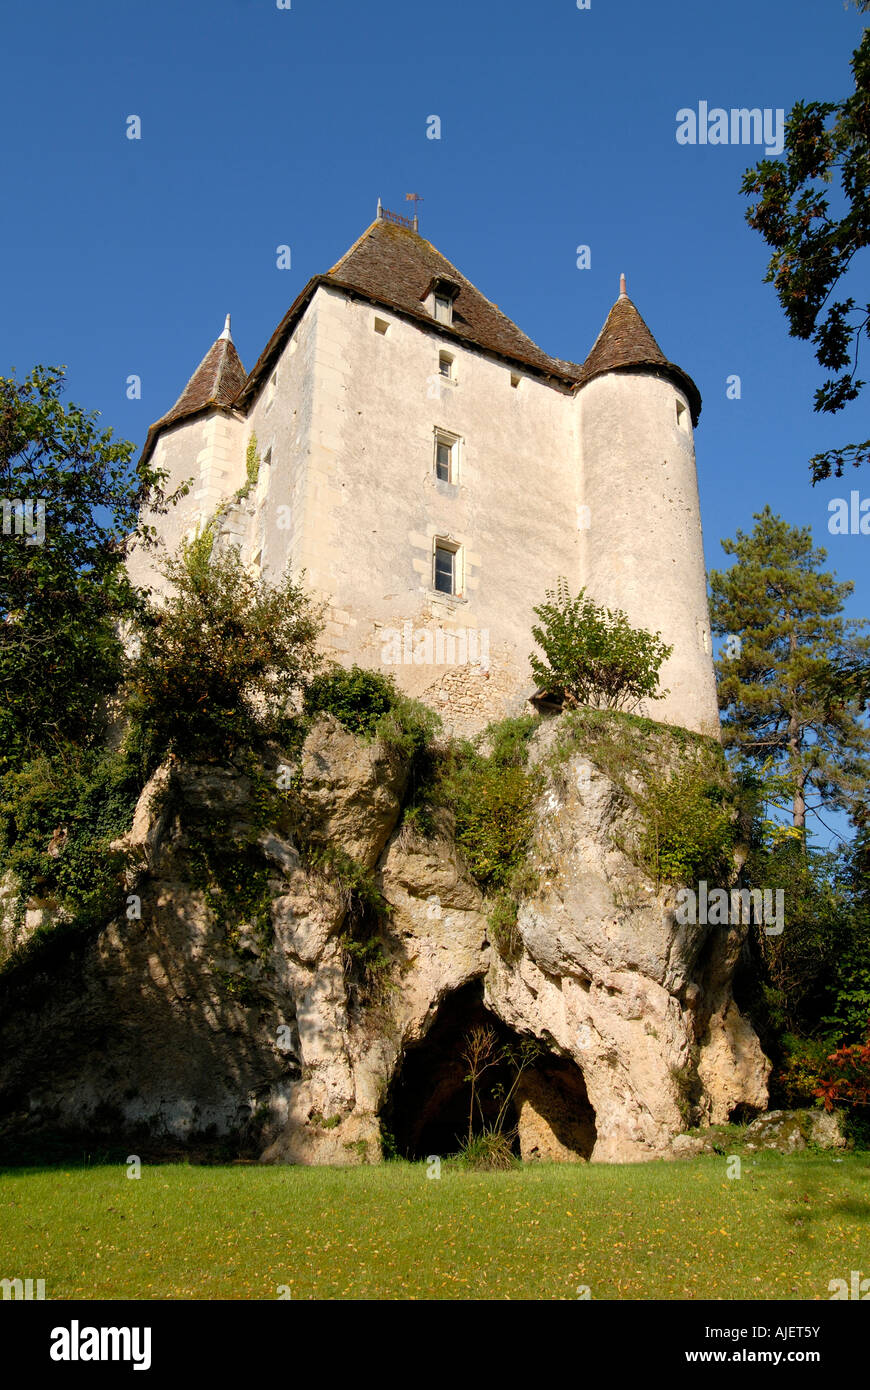 Chateau de Jutreau, Vicq sur Gartempe, Vienne, in Francia. Foto Stock